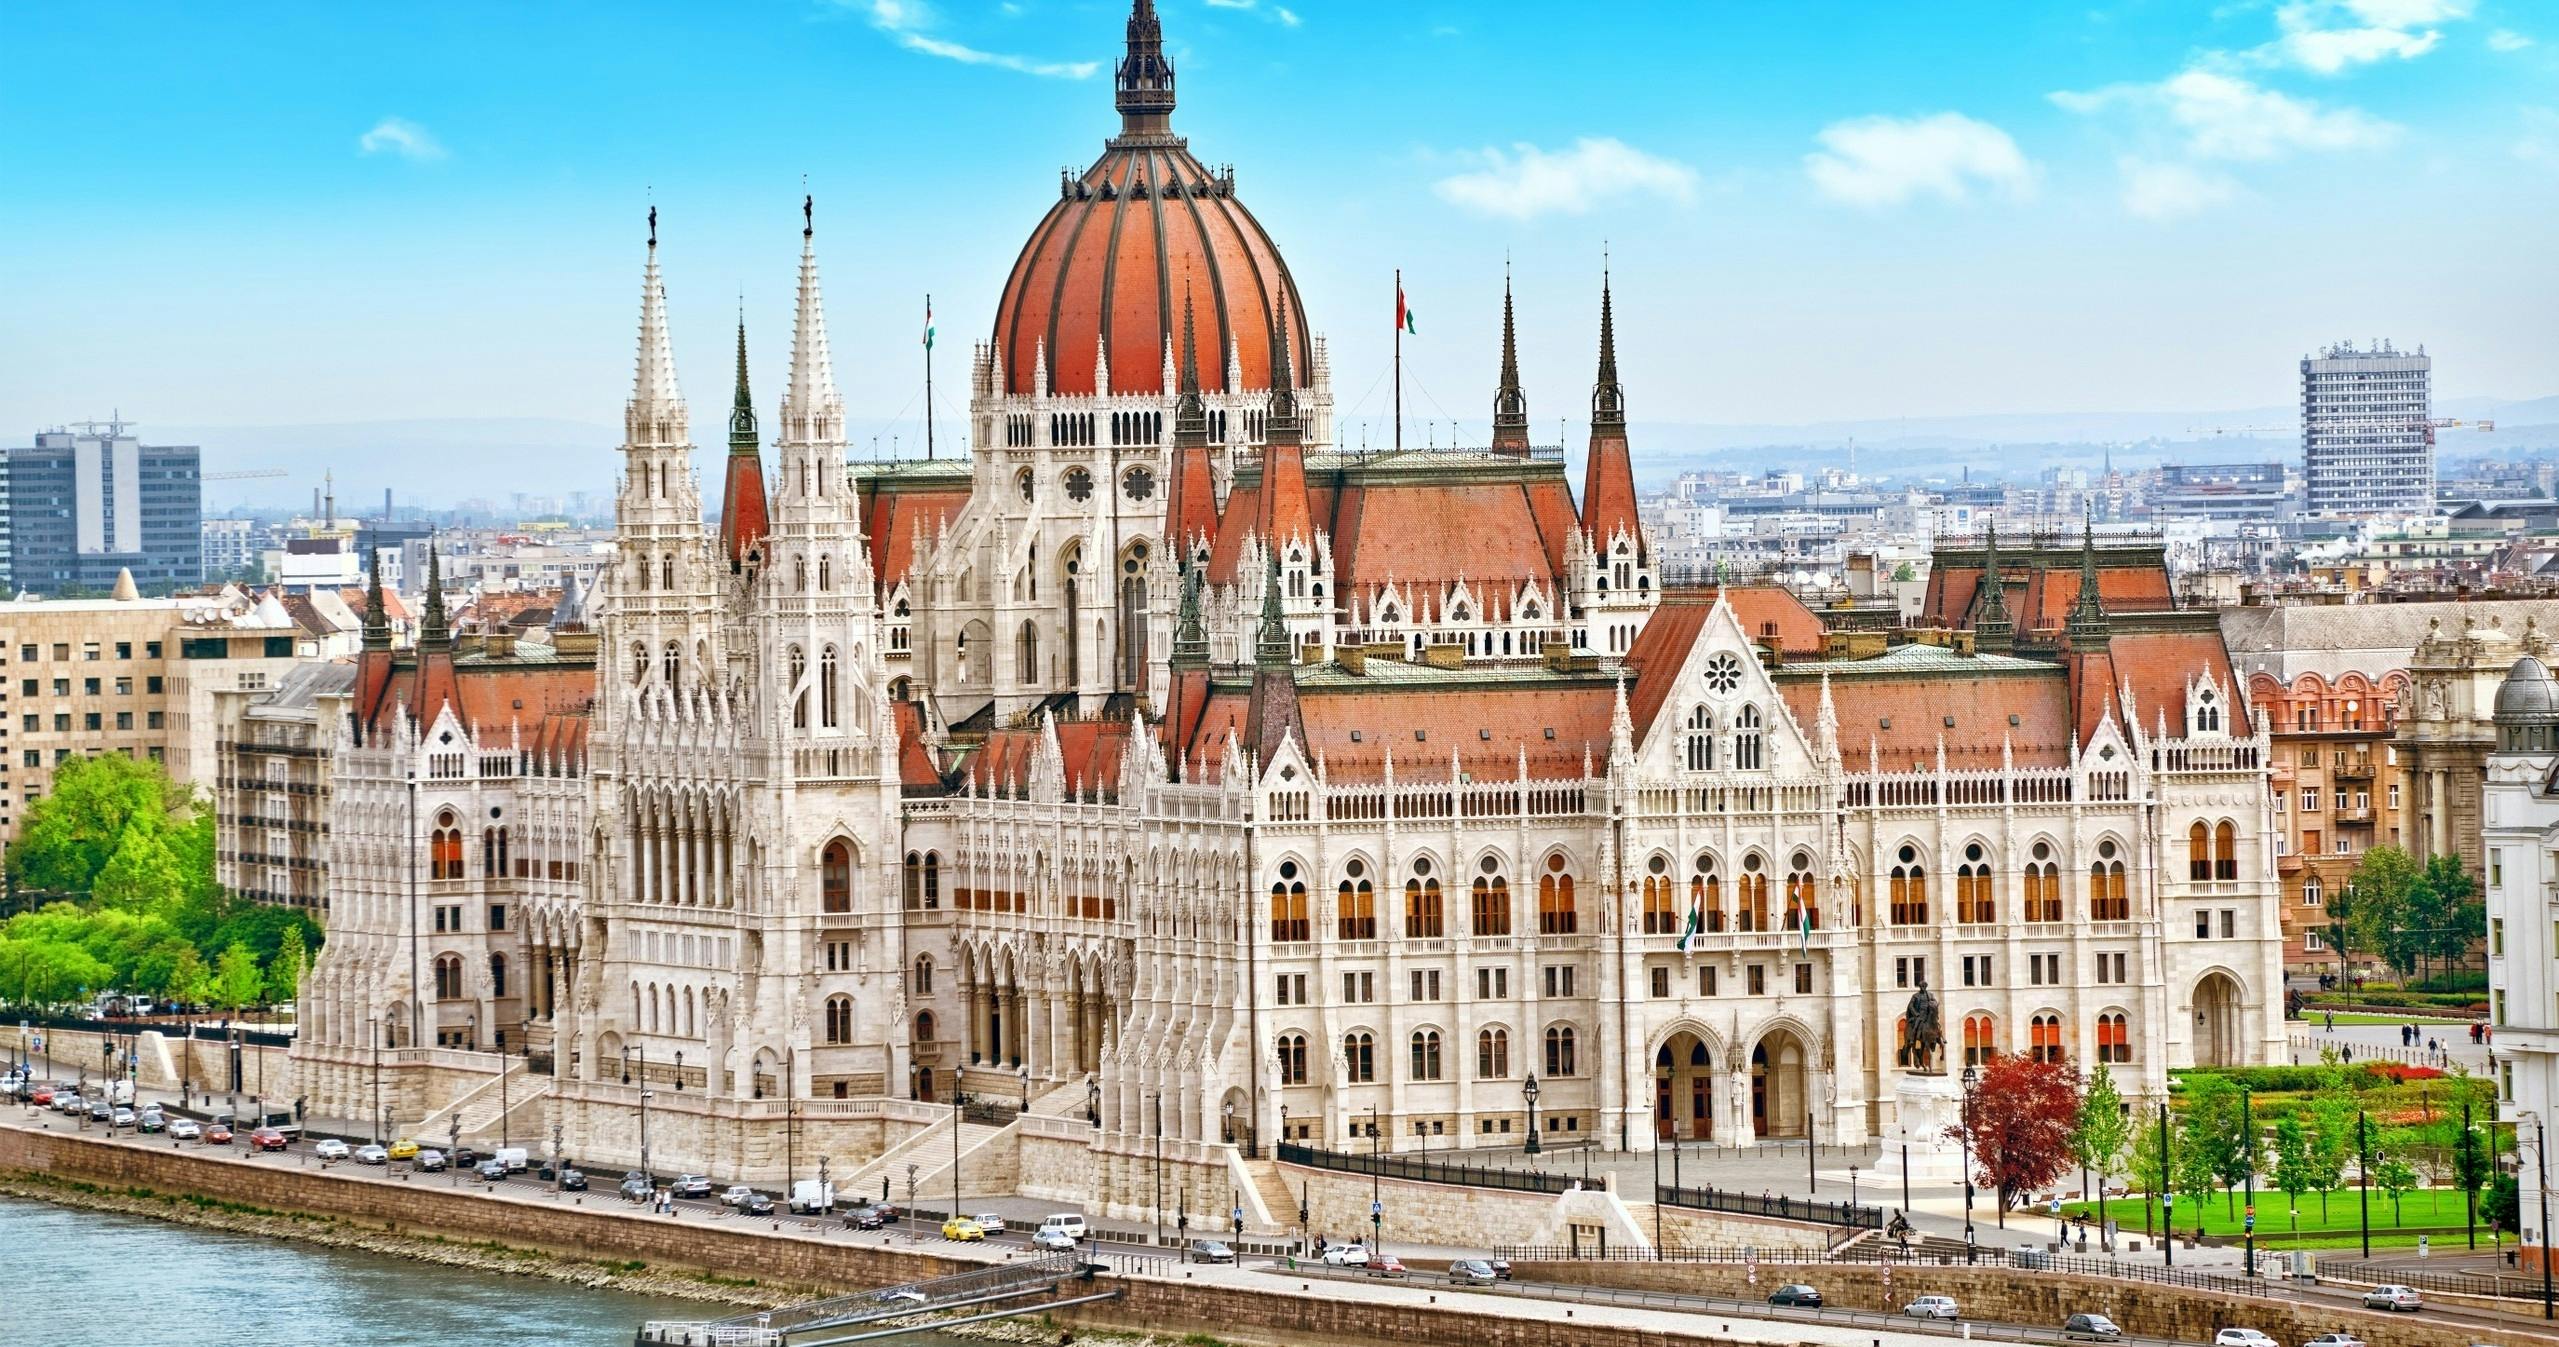 Visite guidée du Parlement hongrois